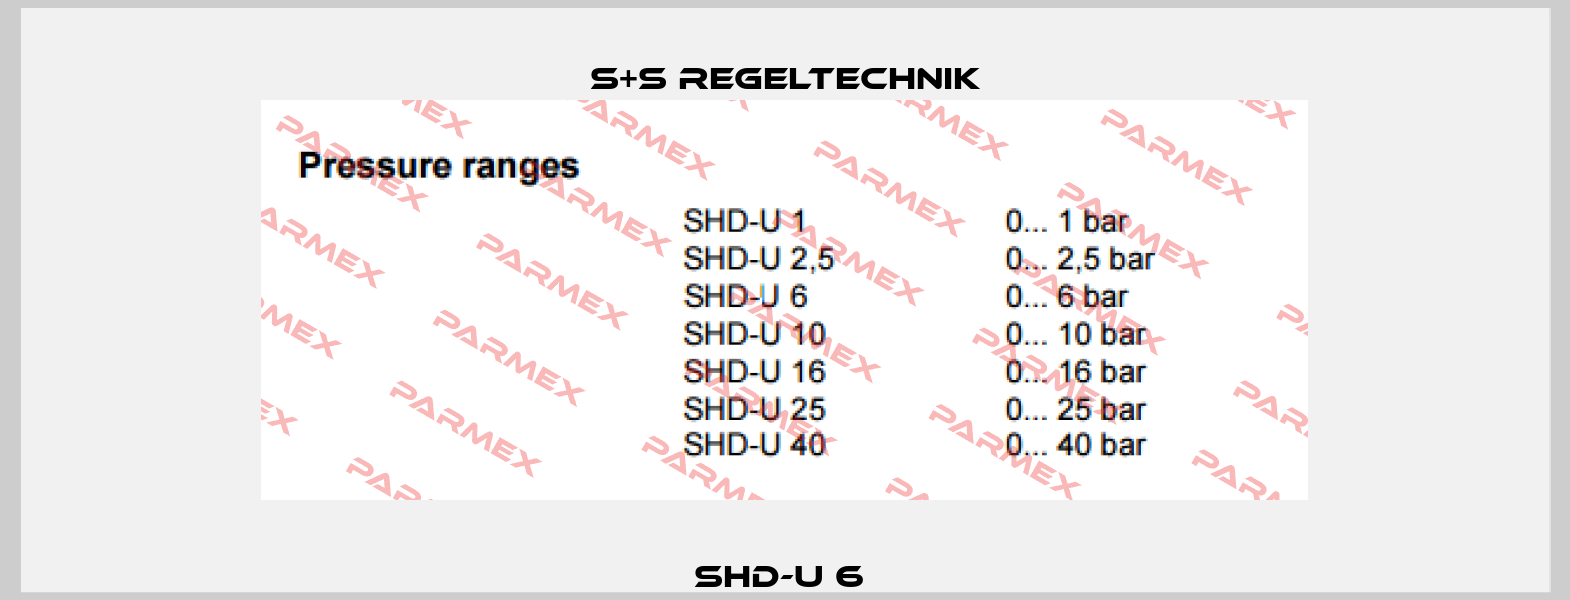 SHD-U 6  S+S REGELTECHNIK